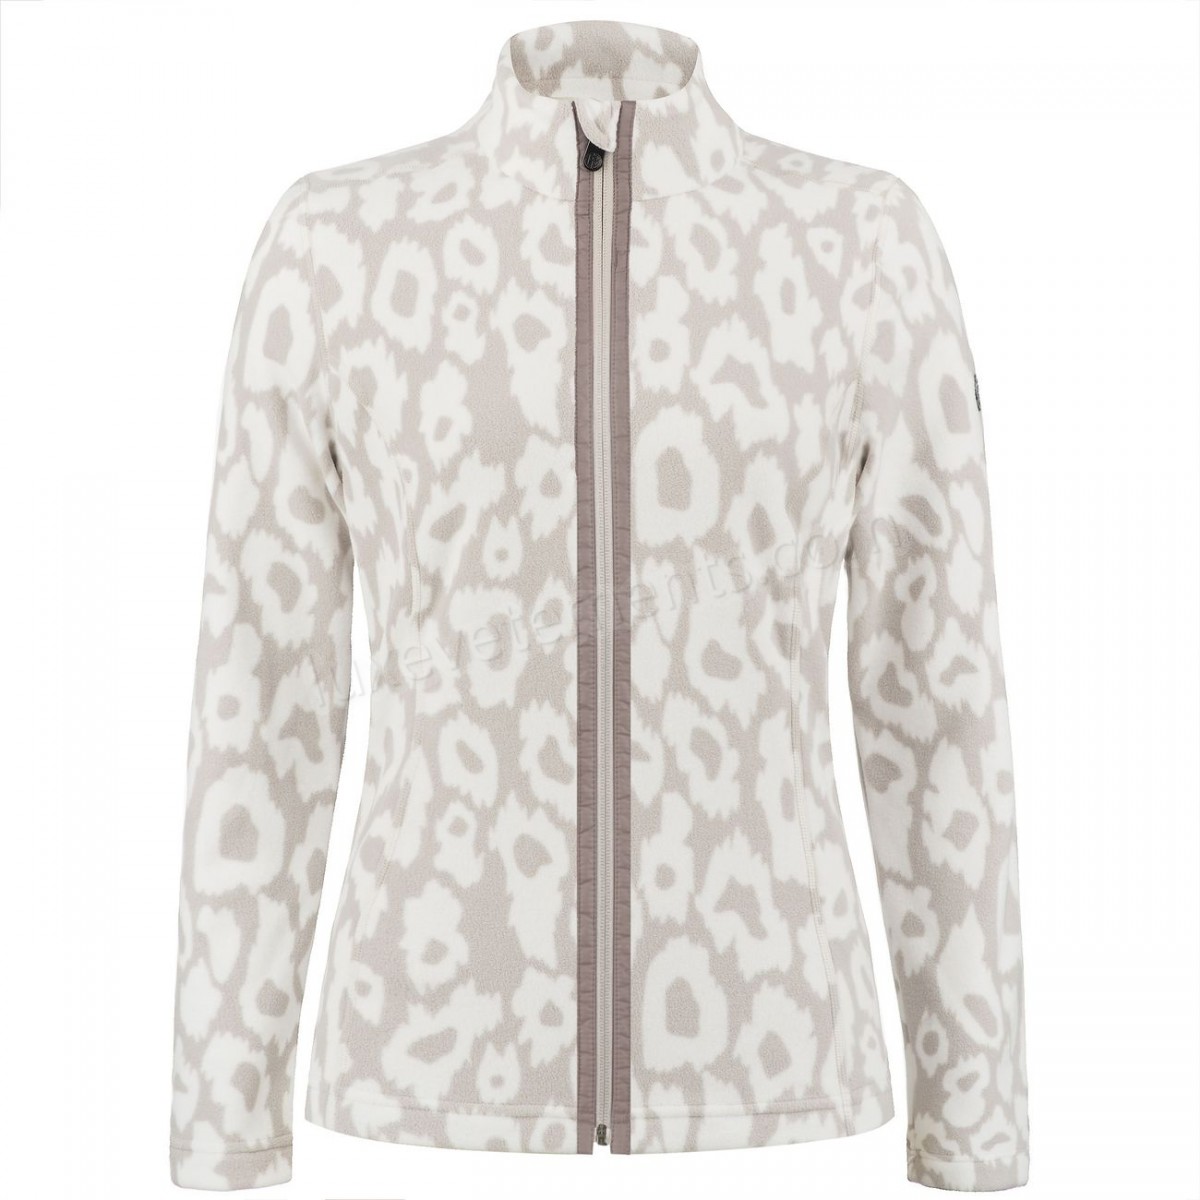 Poivre Blanc-Sports d'hiver femme POIVRE BLANC Veste Polaire Poivre Blanc Fleece Jacket 1500 Panther Grey Femme Vente en ligne - -2